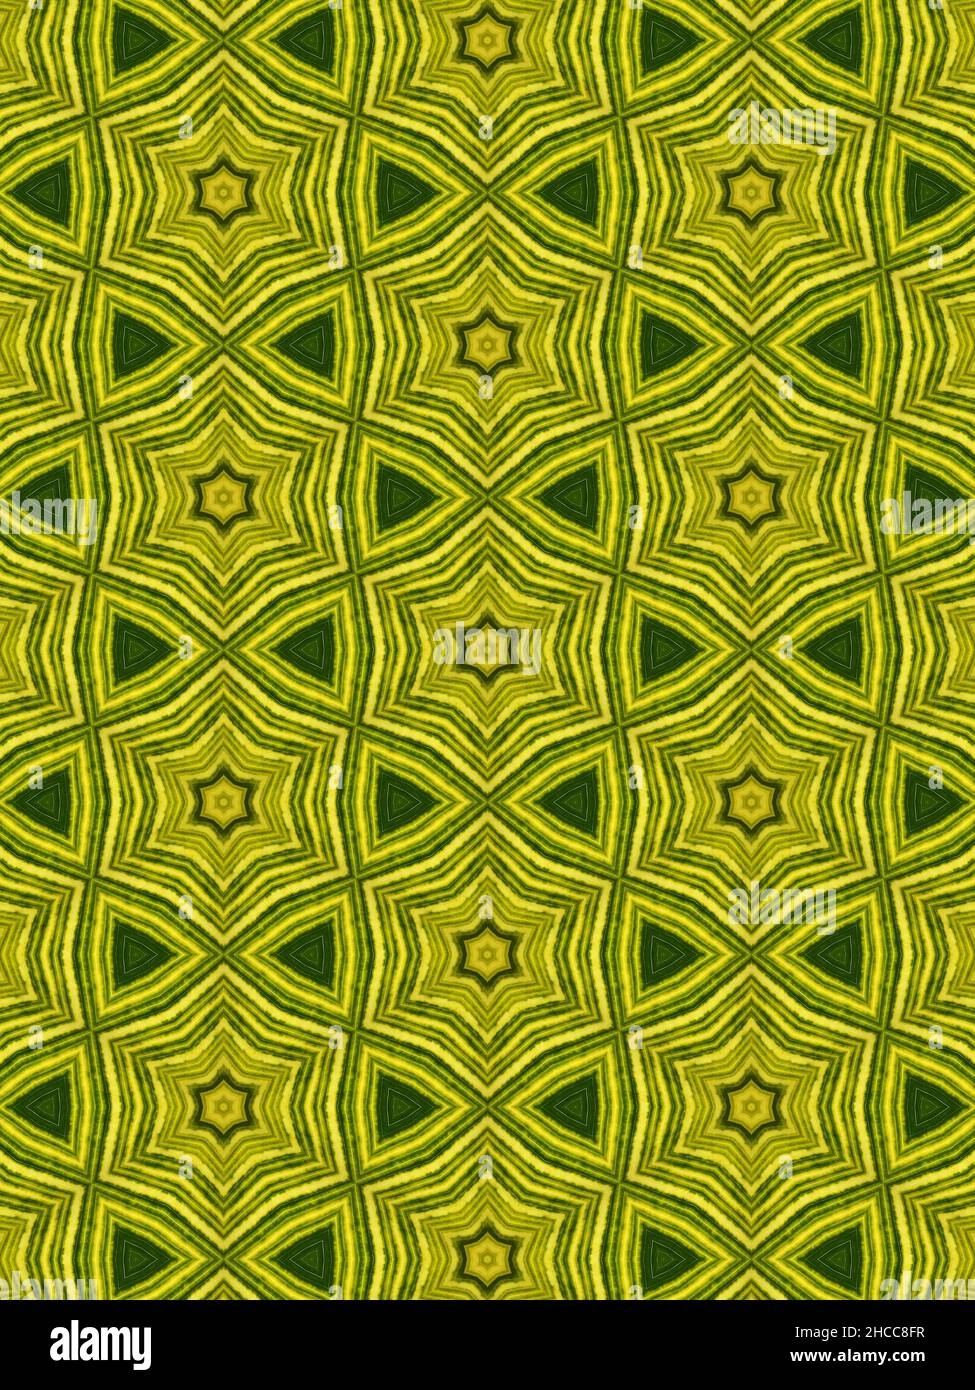 Kaleidoskop-Blatt, ein Blatt, das in ein Kaleidoskop-Bild verwandelt wurde und alle in Grüntönen gehalten sind. Stockfoto